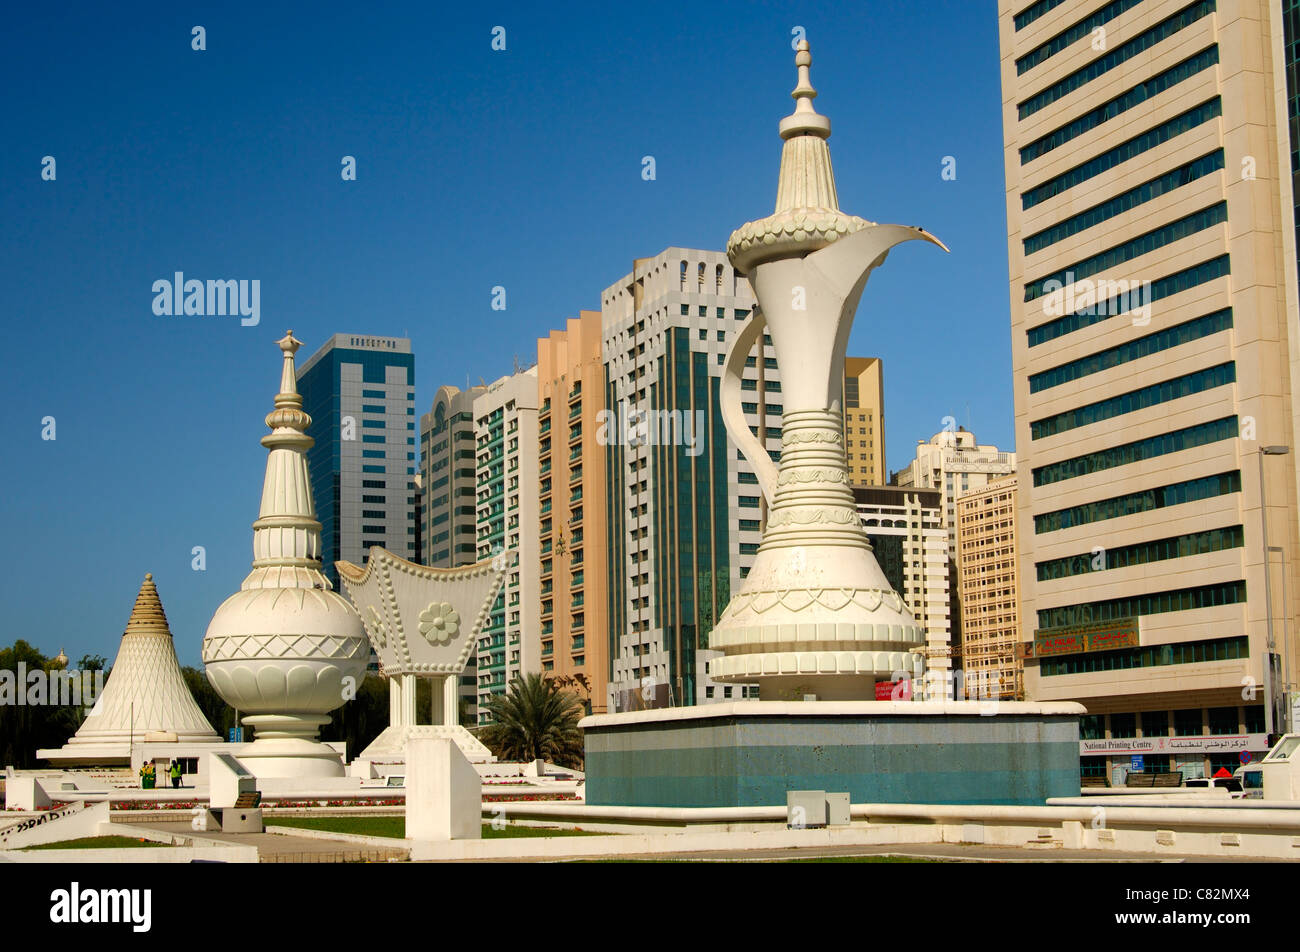 Sculture giganti come simboli di tradizione araba e ospitalità sulla piazza Ittihad, Abu Dhabi, Emirati Arabi Uniti Foto Stock